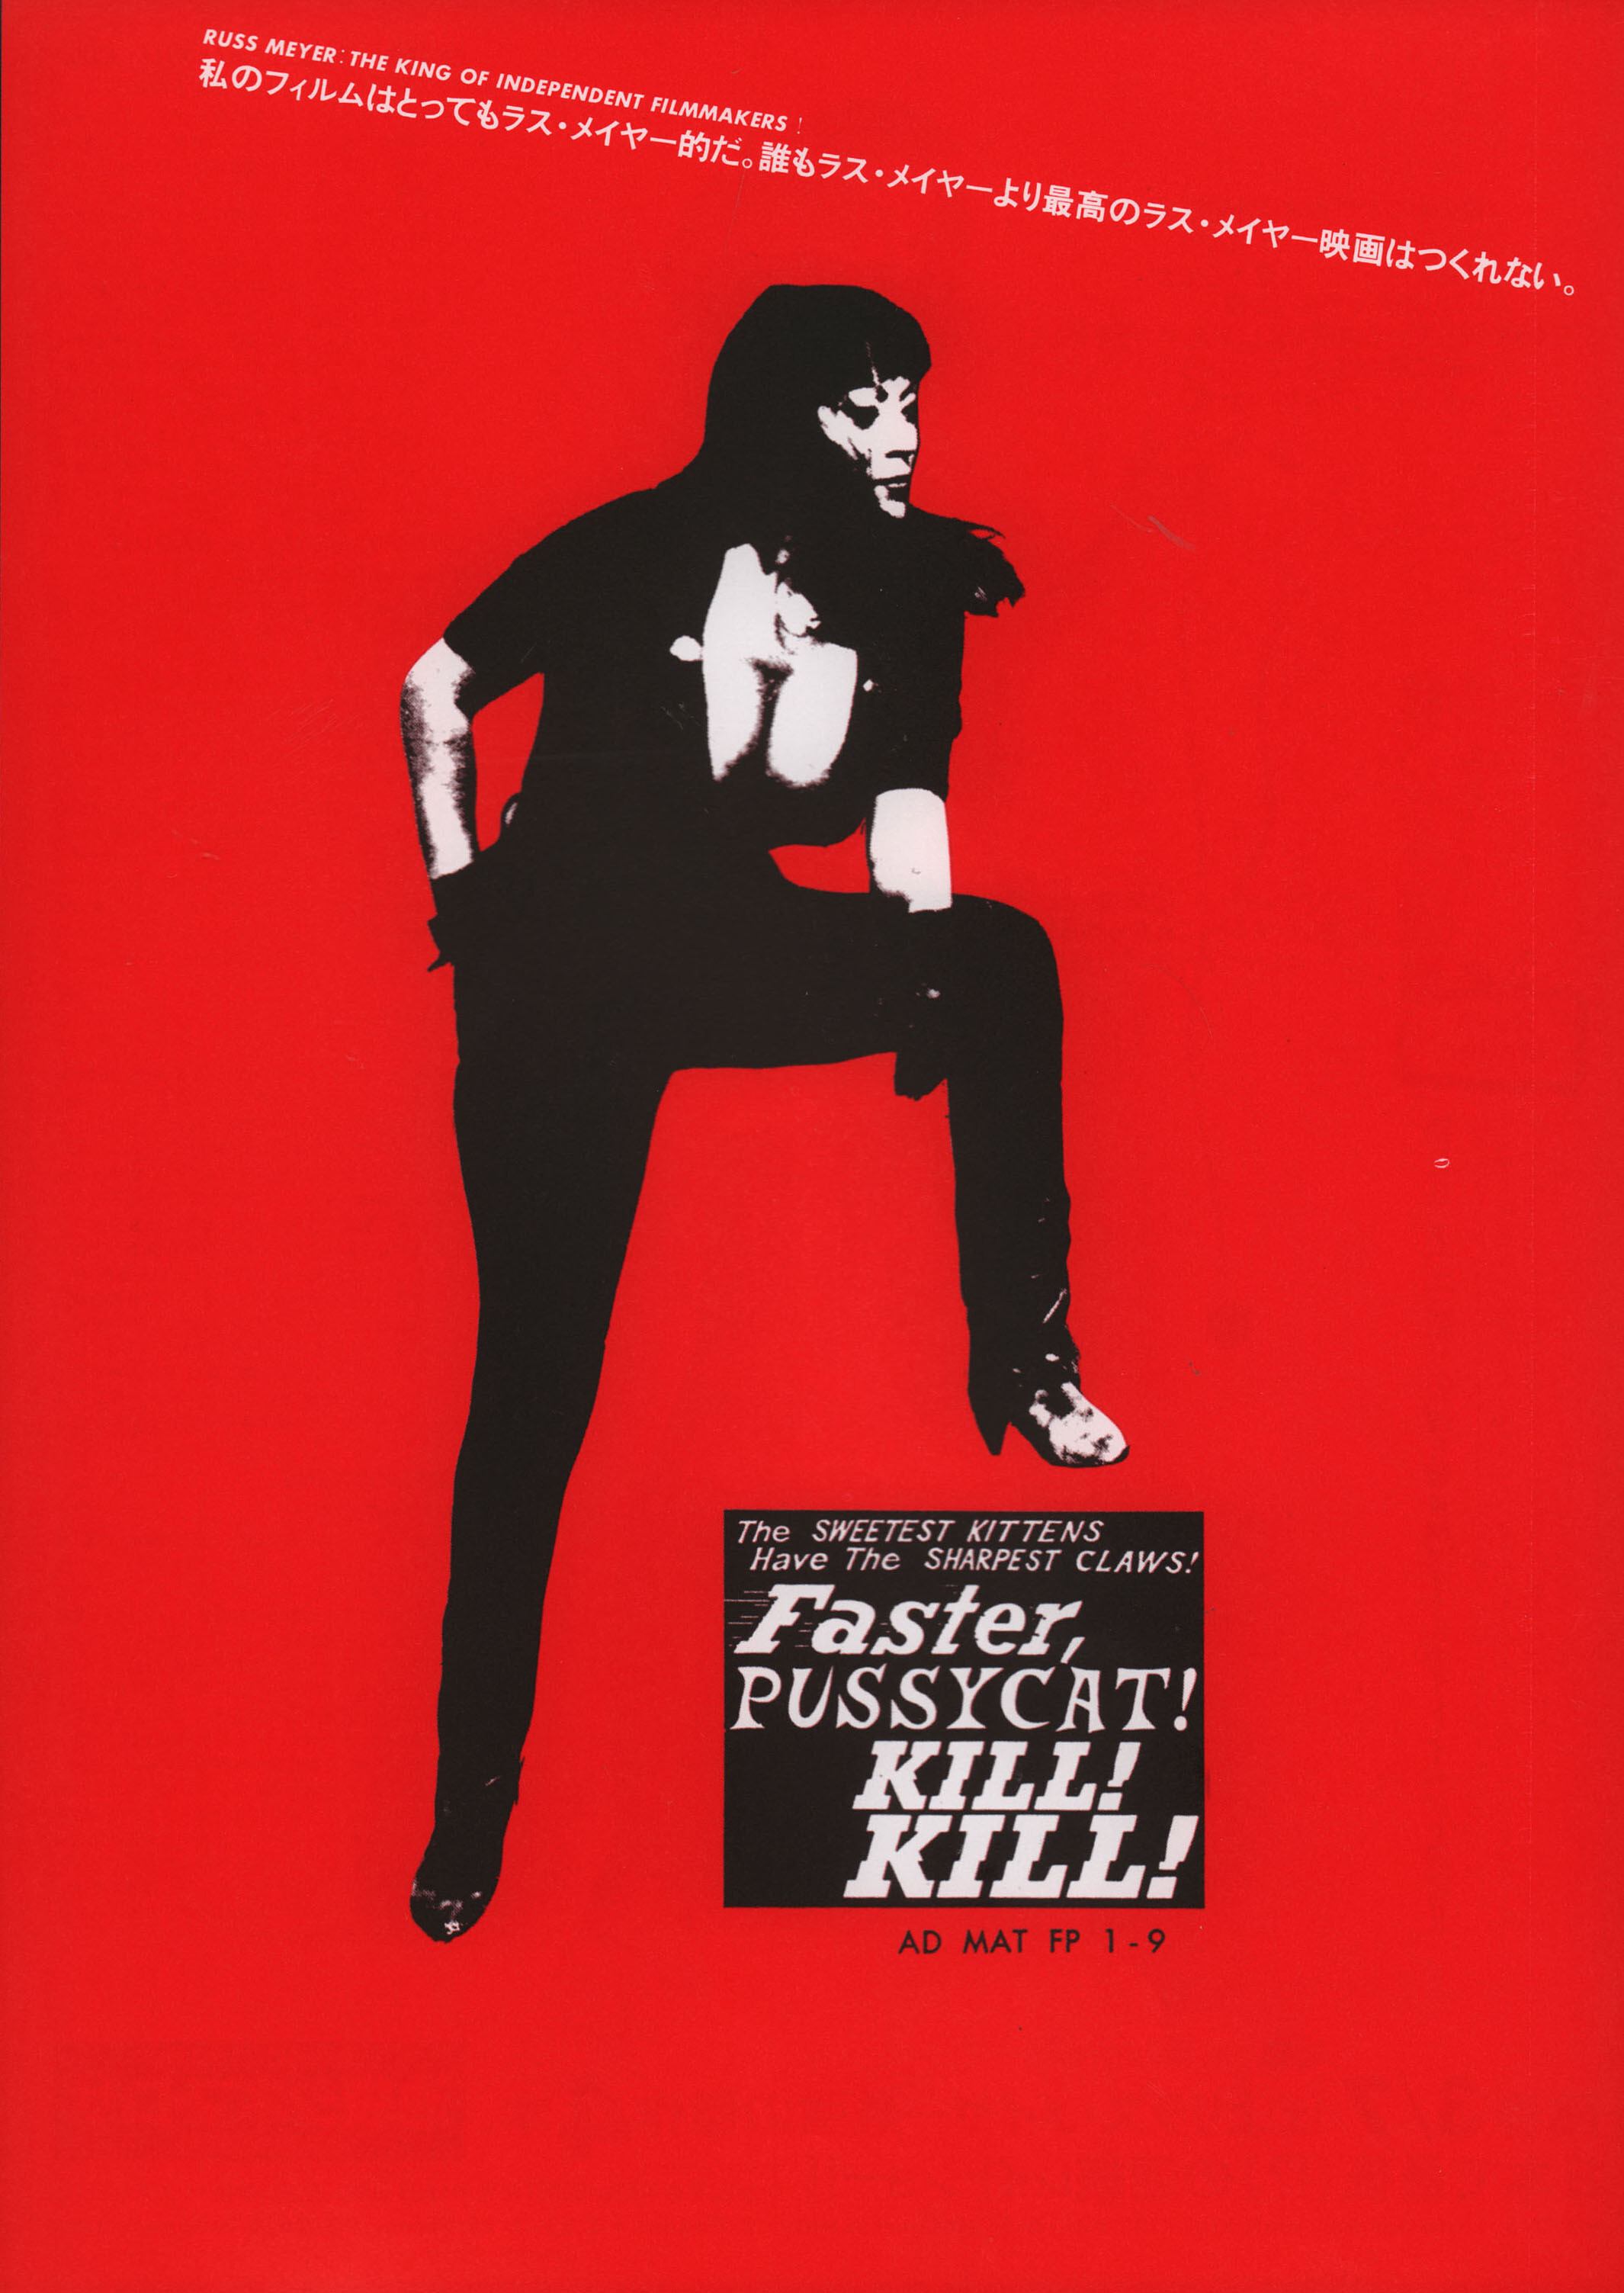 Быстрее, кошечка! Убей, убей! (Faster, Pussycat! Kill! Kill!, 1965), режиссёр Расс Мейер, минималистичный постер к фильму (Япония, 2000 год)